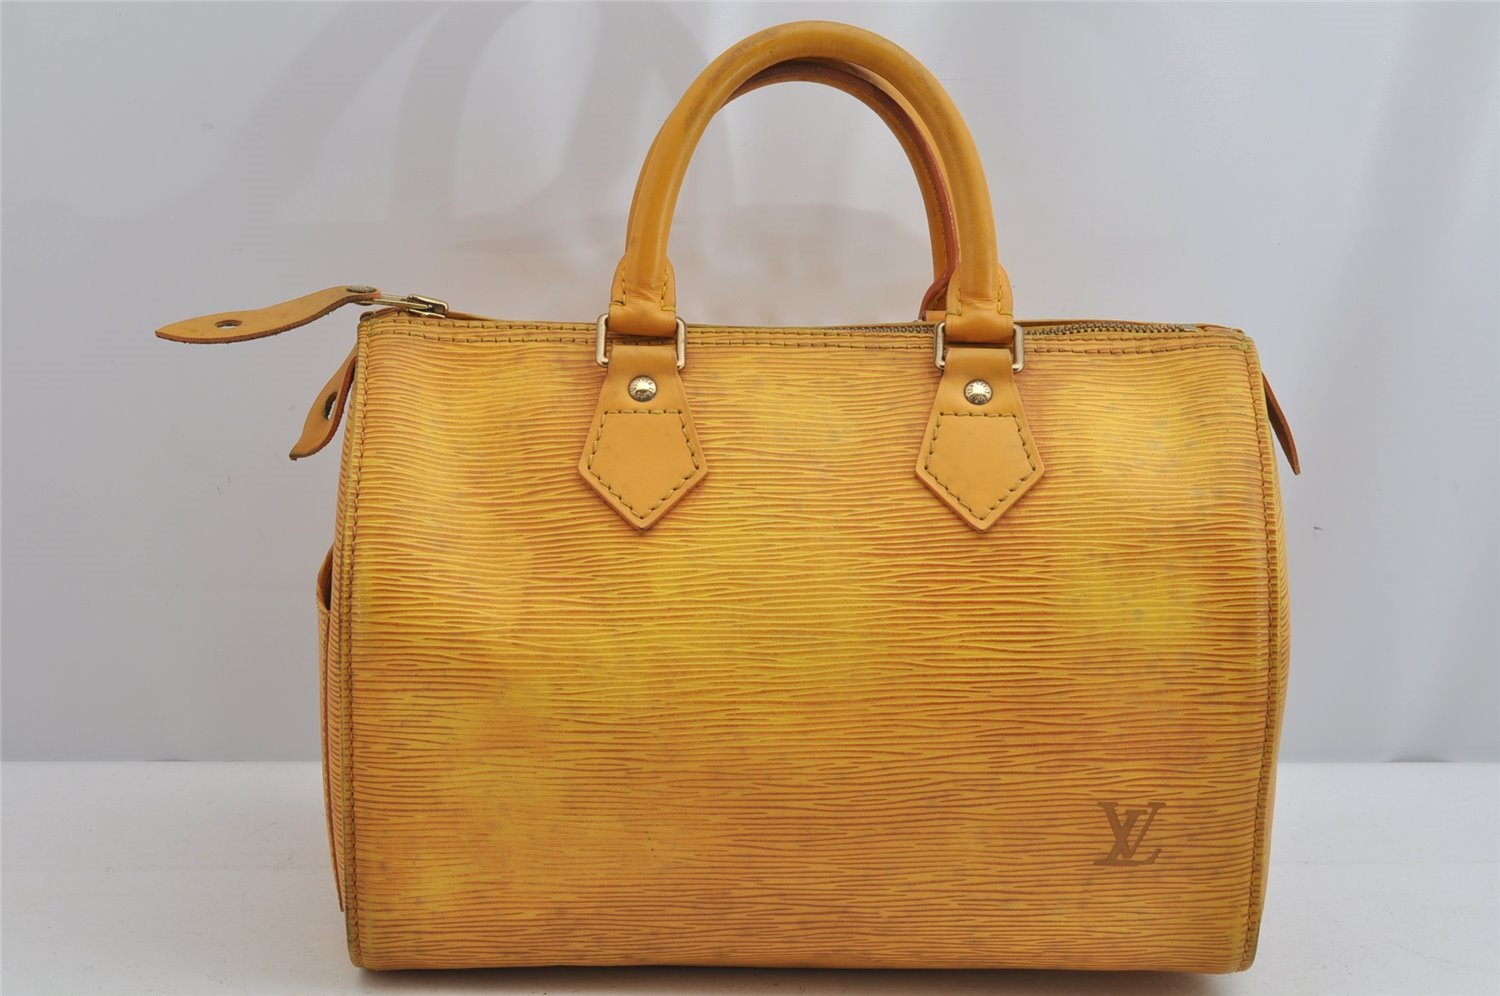 Authentic Louis Vuitton Epi Speedy 25 Hand Boston Bag Yellow M43019 LV 9100J